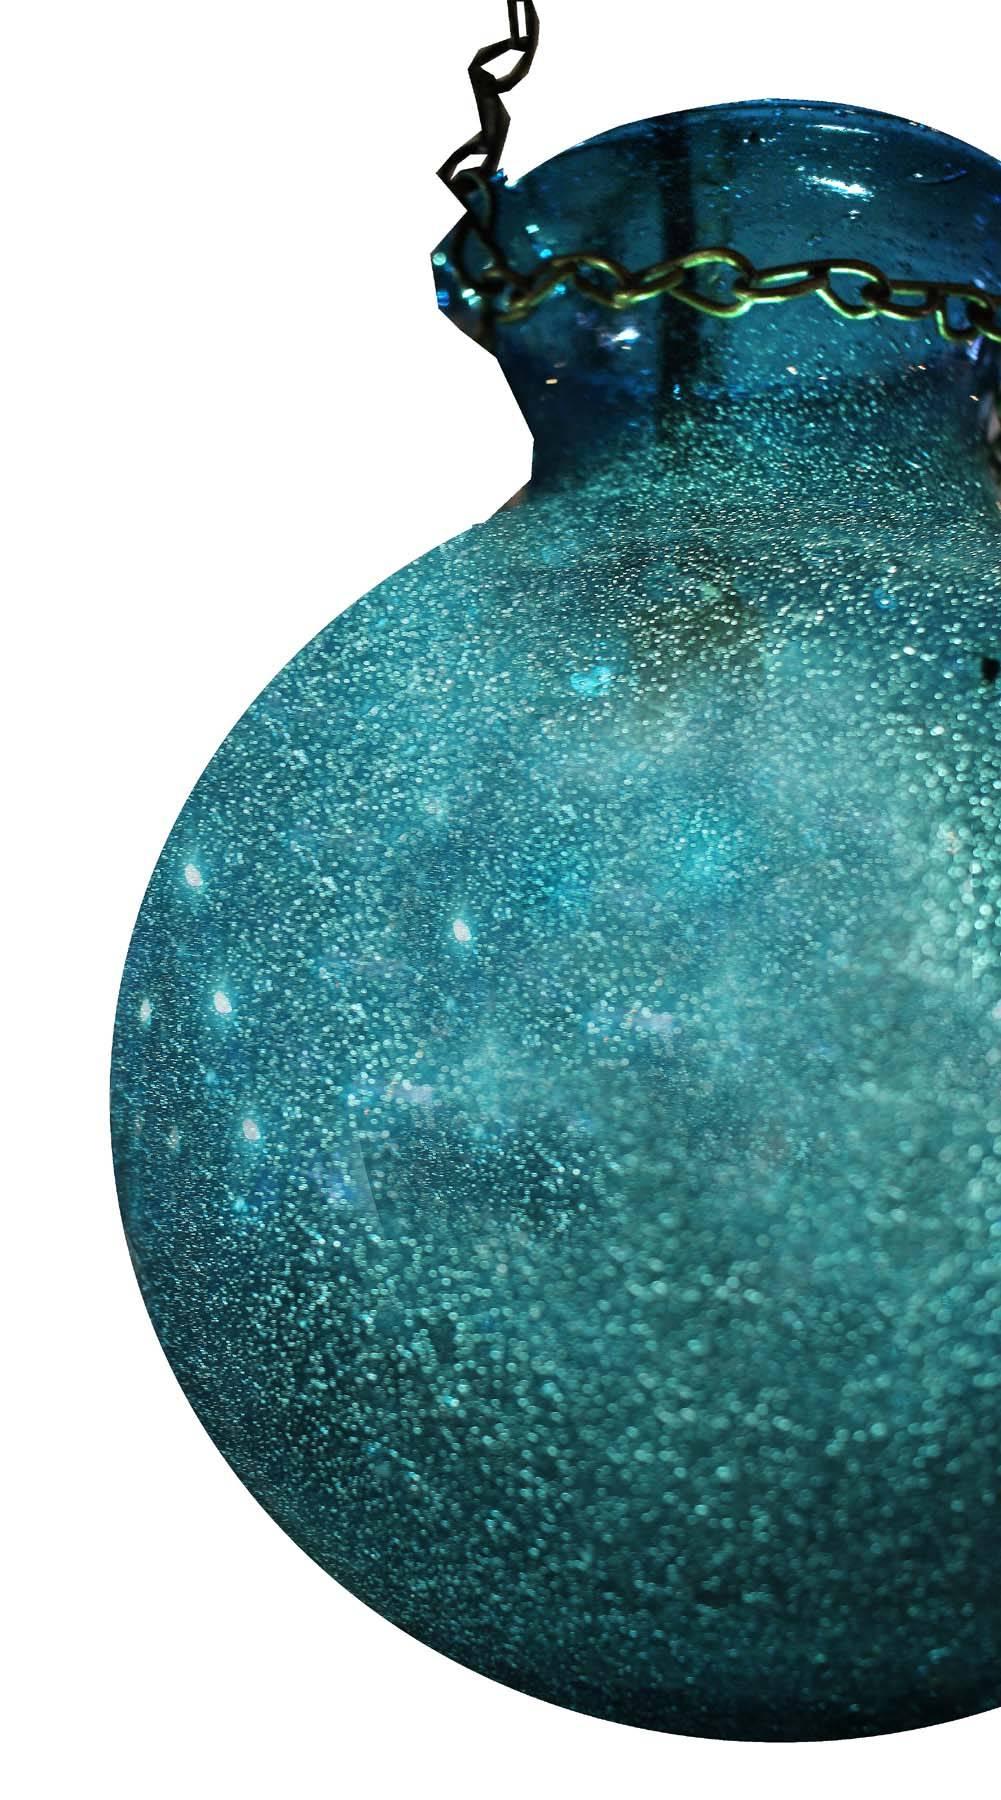 Amazing Egyptian glass chandelier. Huit pots en verre bleu du Nil avec un anneau et une chaîne en laiton brossé. Un look étonnant et qui peut être personnalisé en plusieurs tailles et couleurs. Dans le monde de l'éclairage original, vous ne